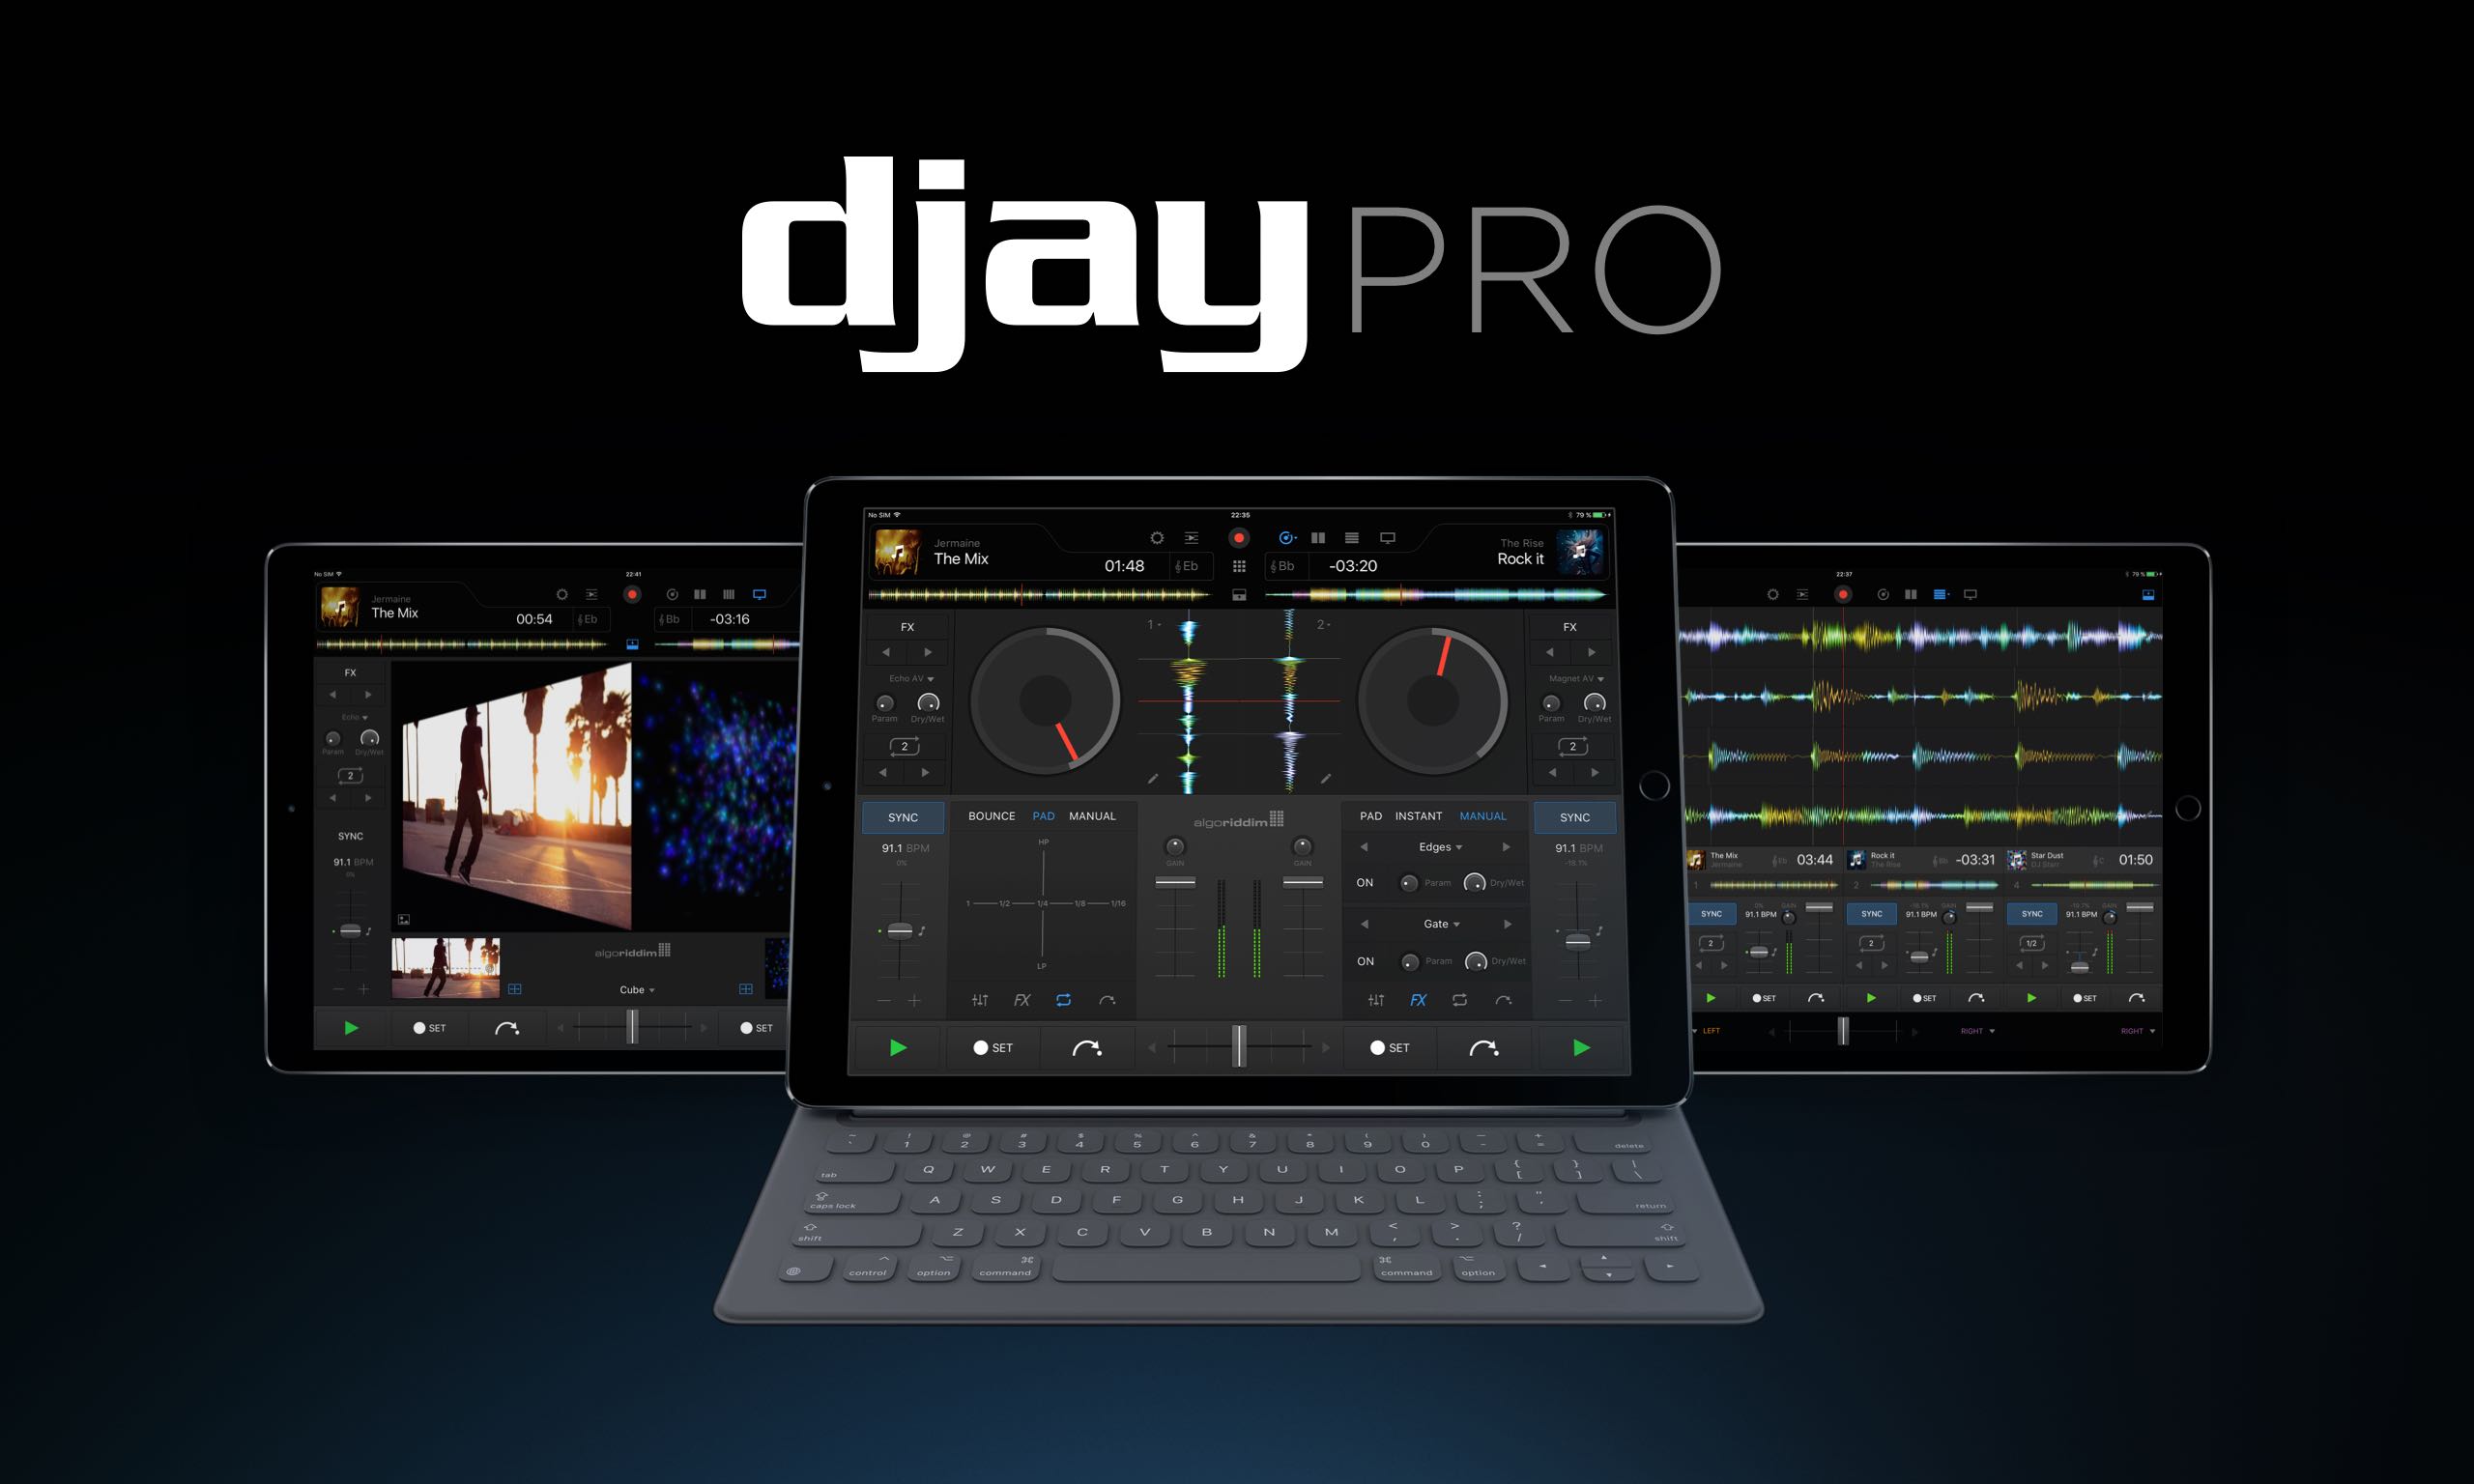 Djay Pro 2 Ipad Spotify